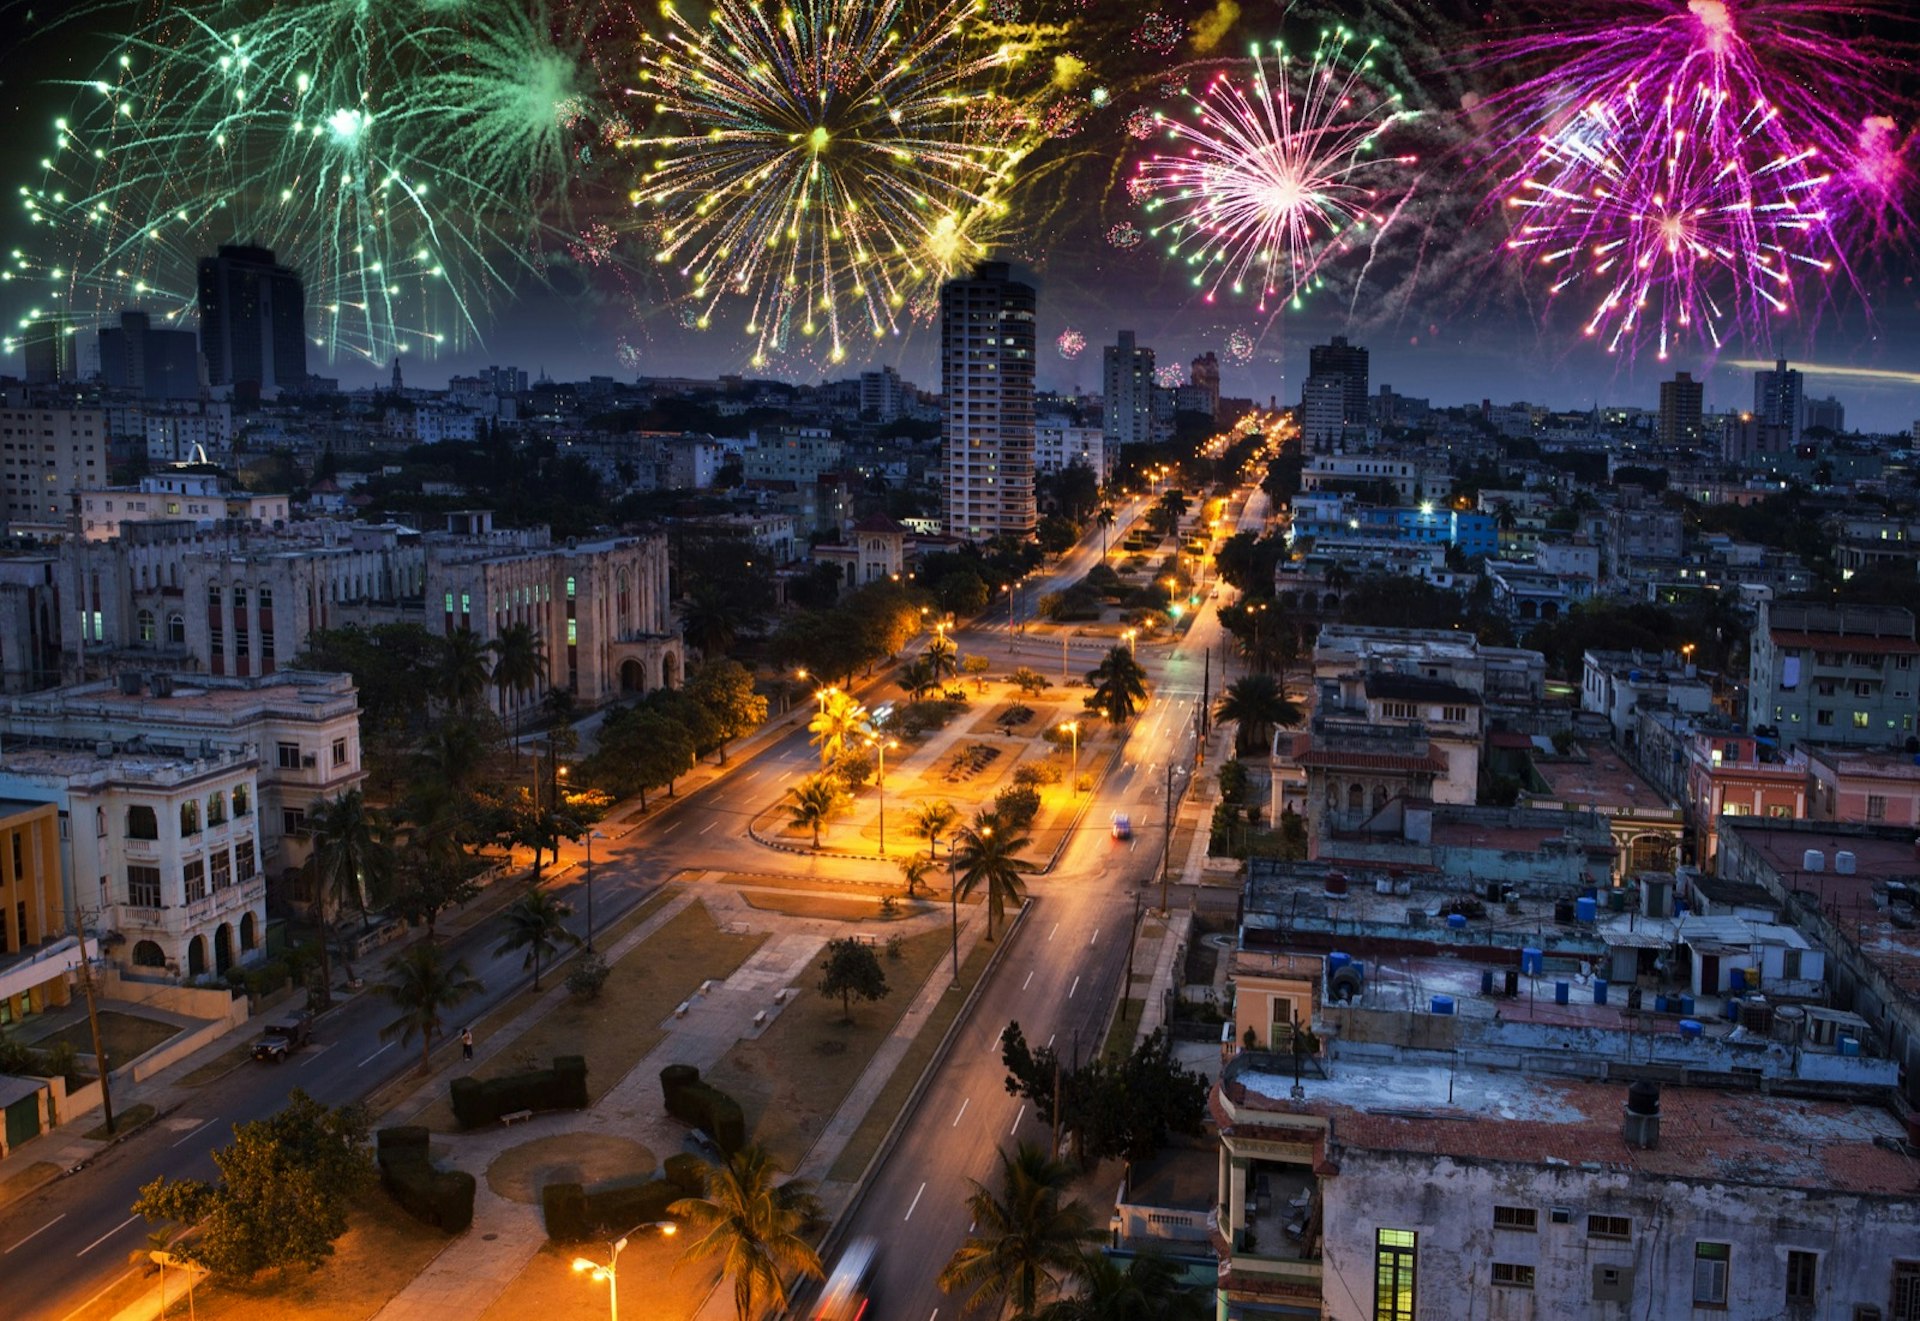 Fireworks explode over the city skyline in Havana © Shutterstock